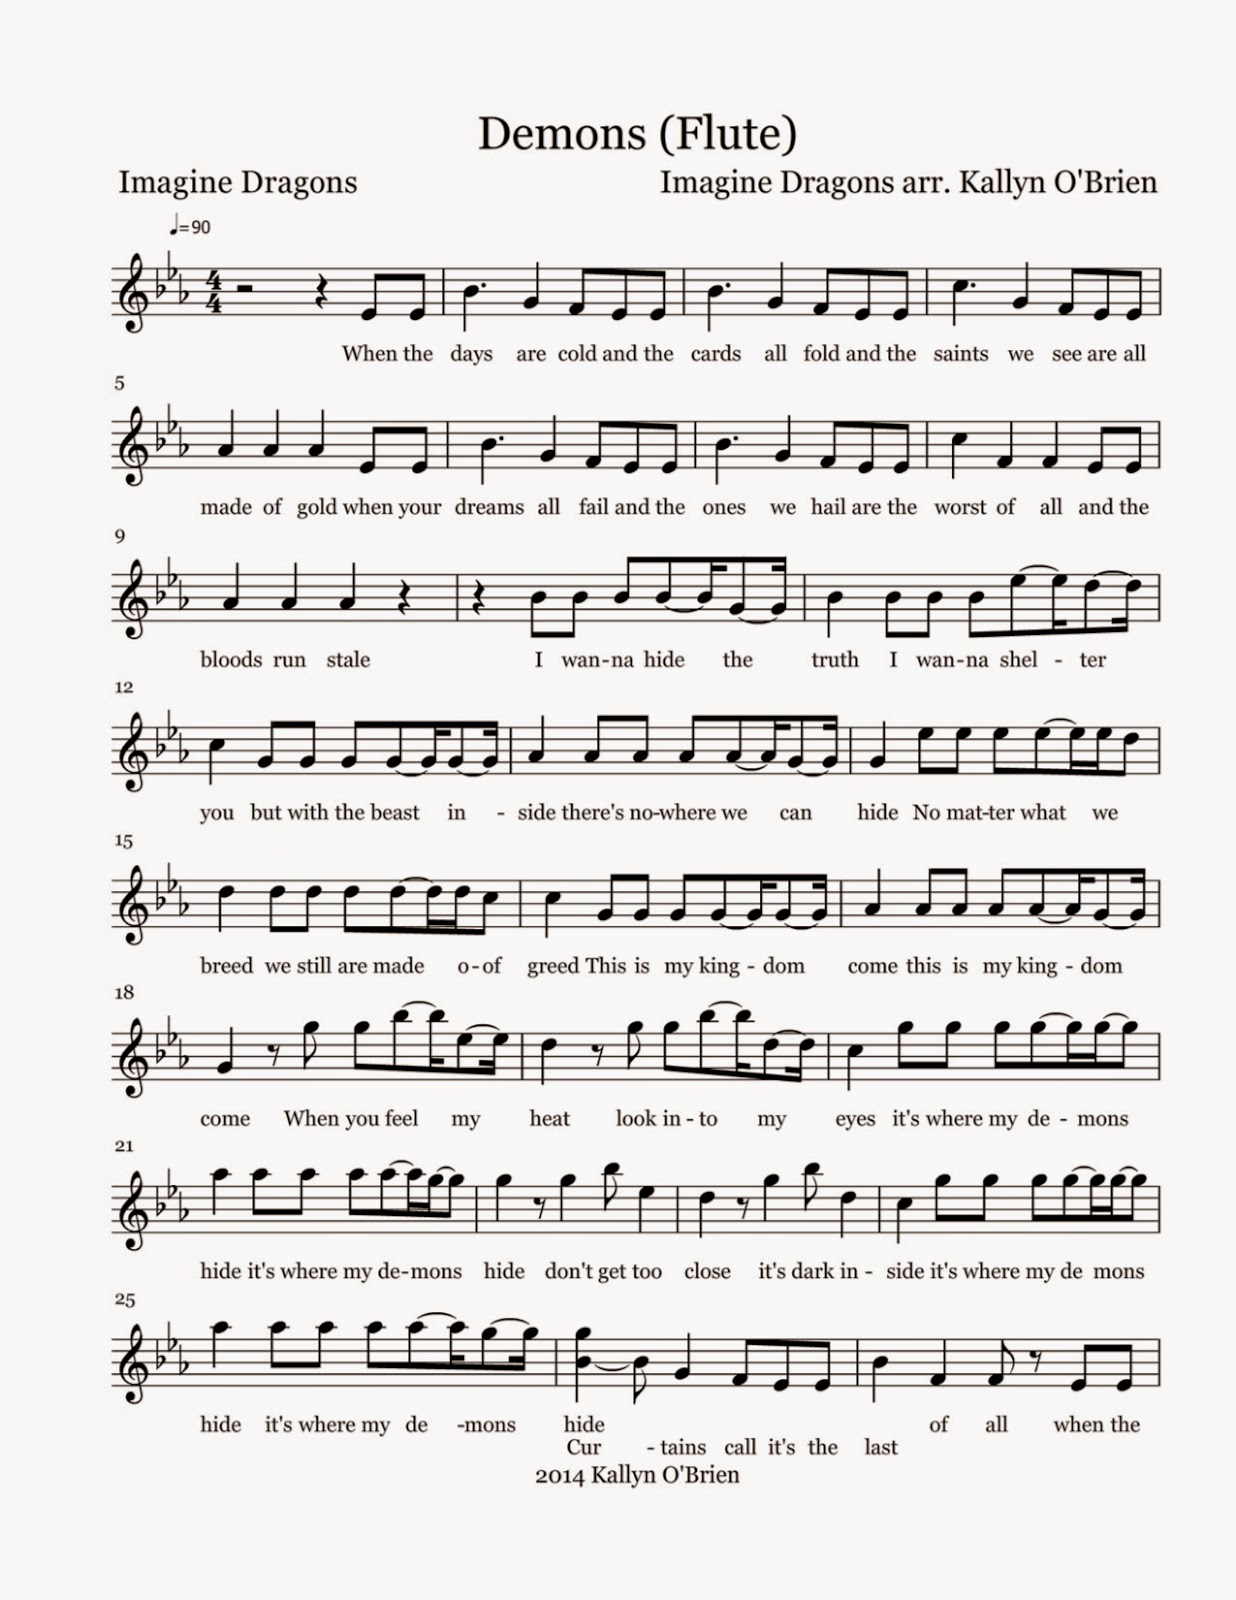 Flute Sheet Music: Demons - Sheet Music1236 x 1600